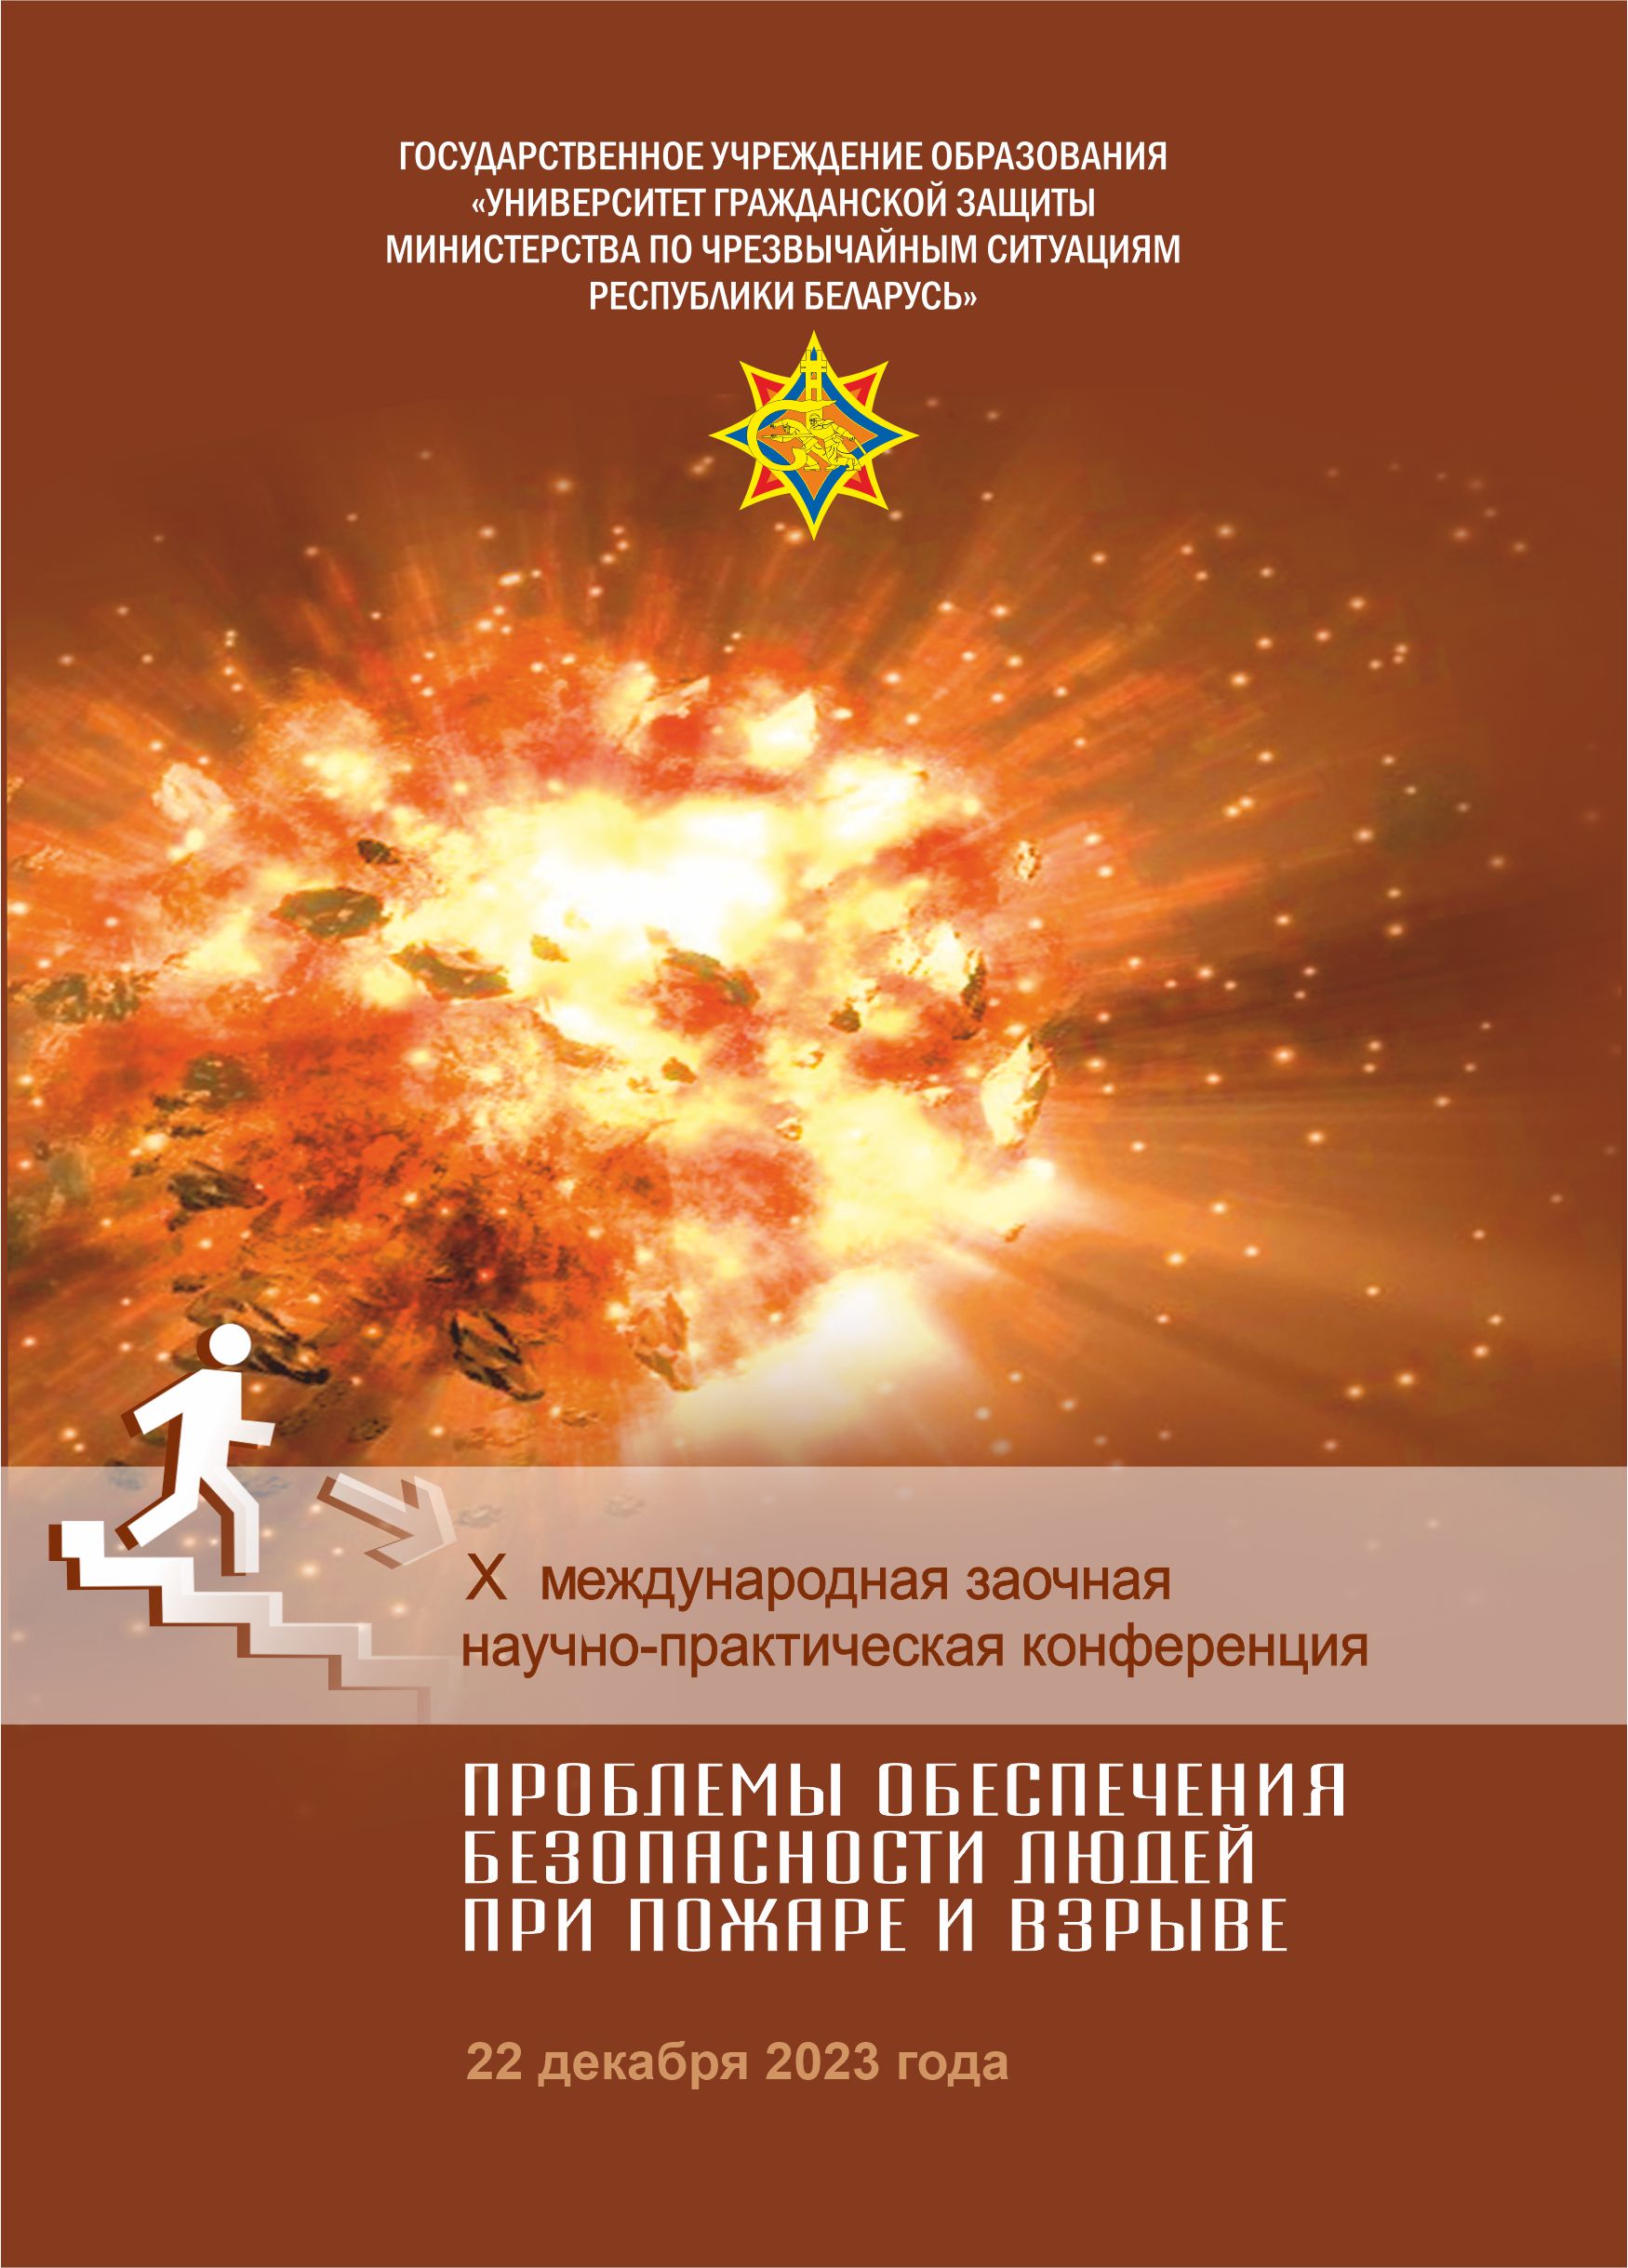 					Показать 2023: X Международная заочная научно-практическая конференция «Проблемы обеспечения безопасности людей при пожаре и взрыве»
				